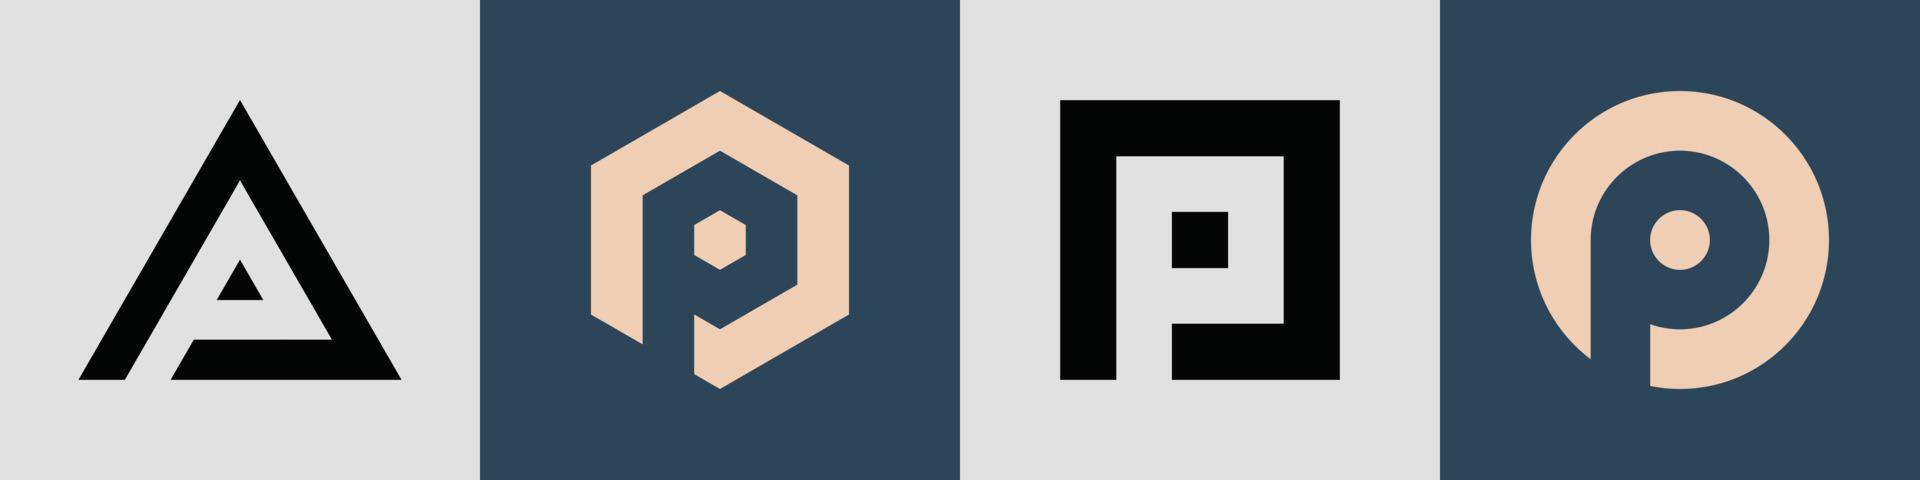 Paquete creativo de diseños de logotipo de letras iniciales simples p. vector